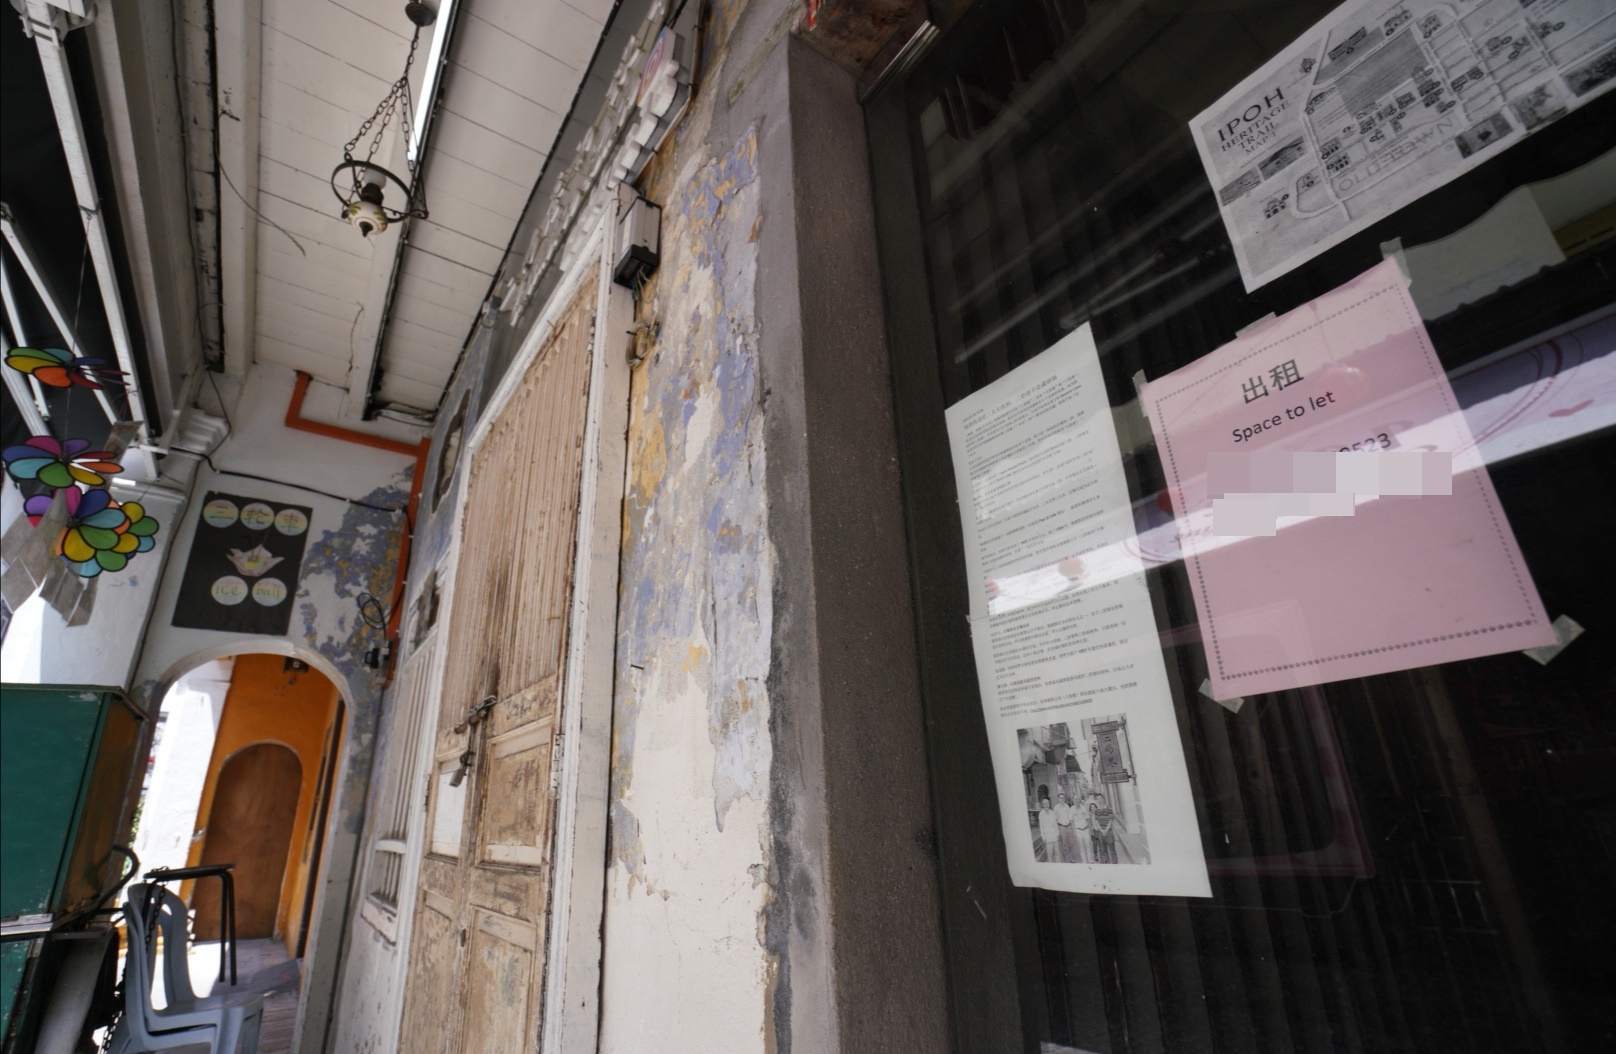 旧街场二奶巷有不少商店都贴上“出租”的告示。

